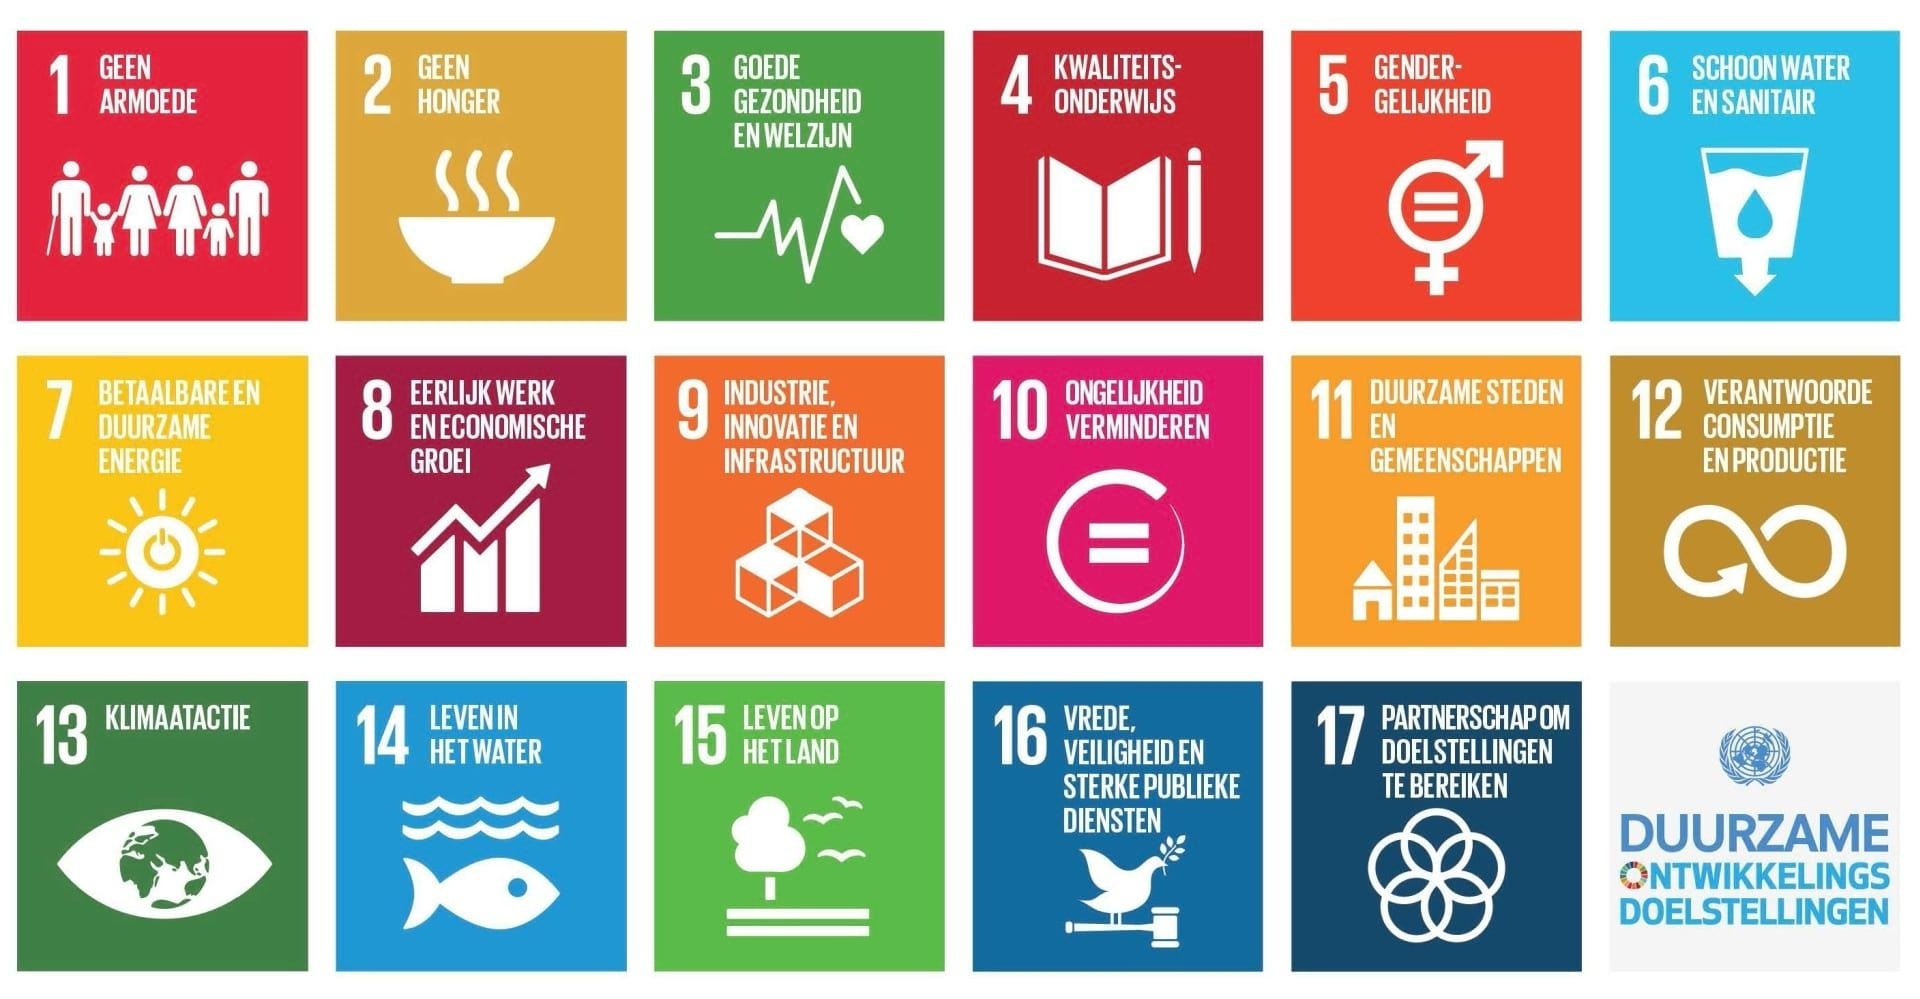 De 17 Sustainable Development Goals die zijn opgesteld door de VN: